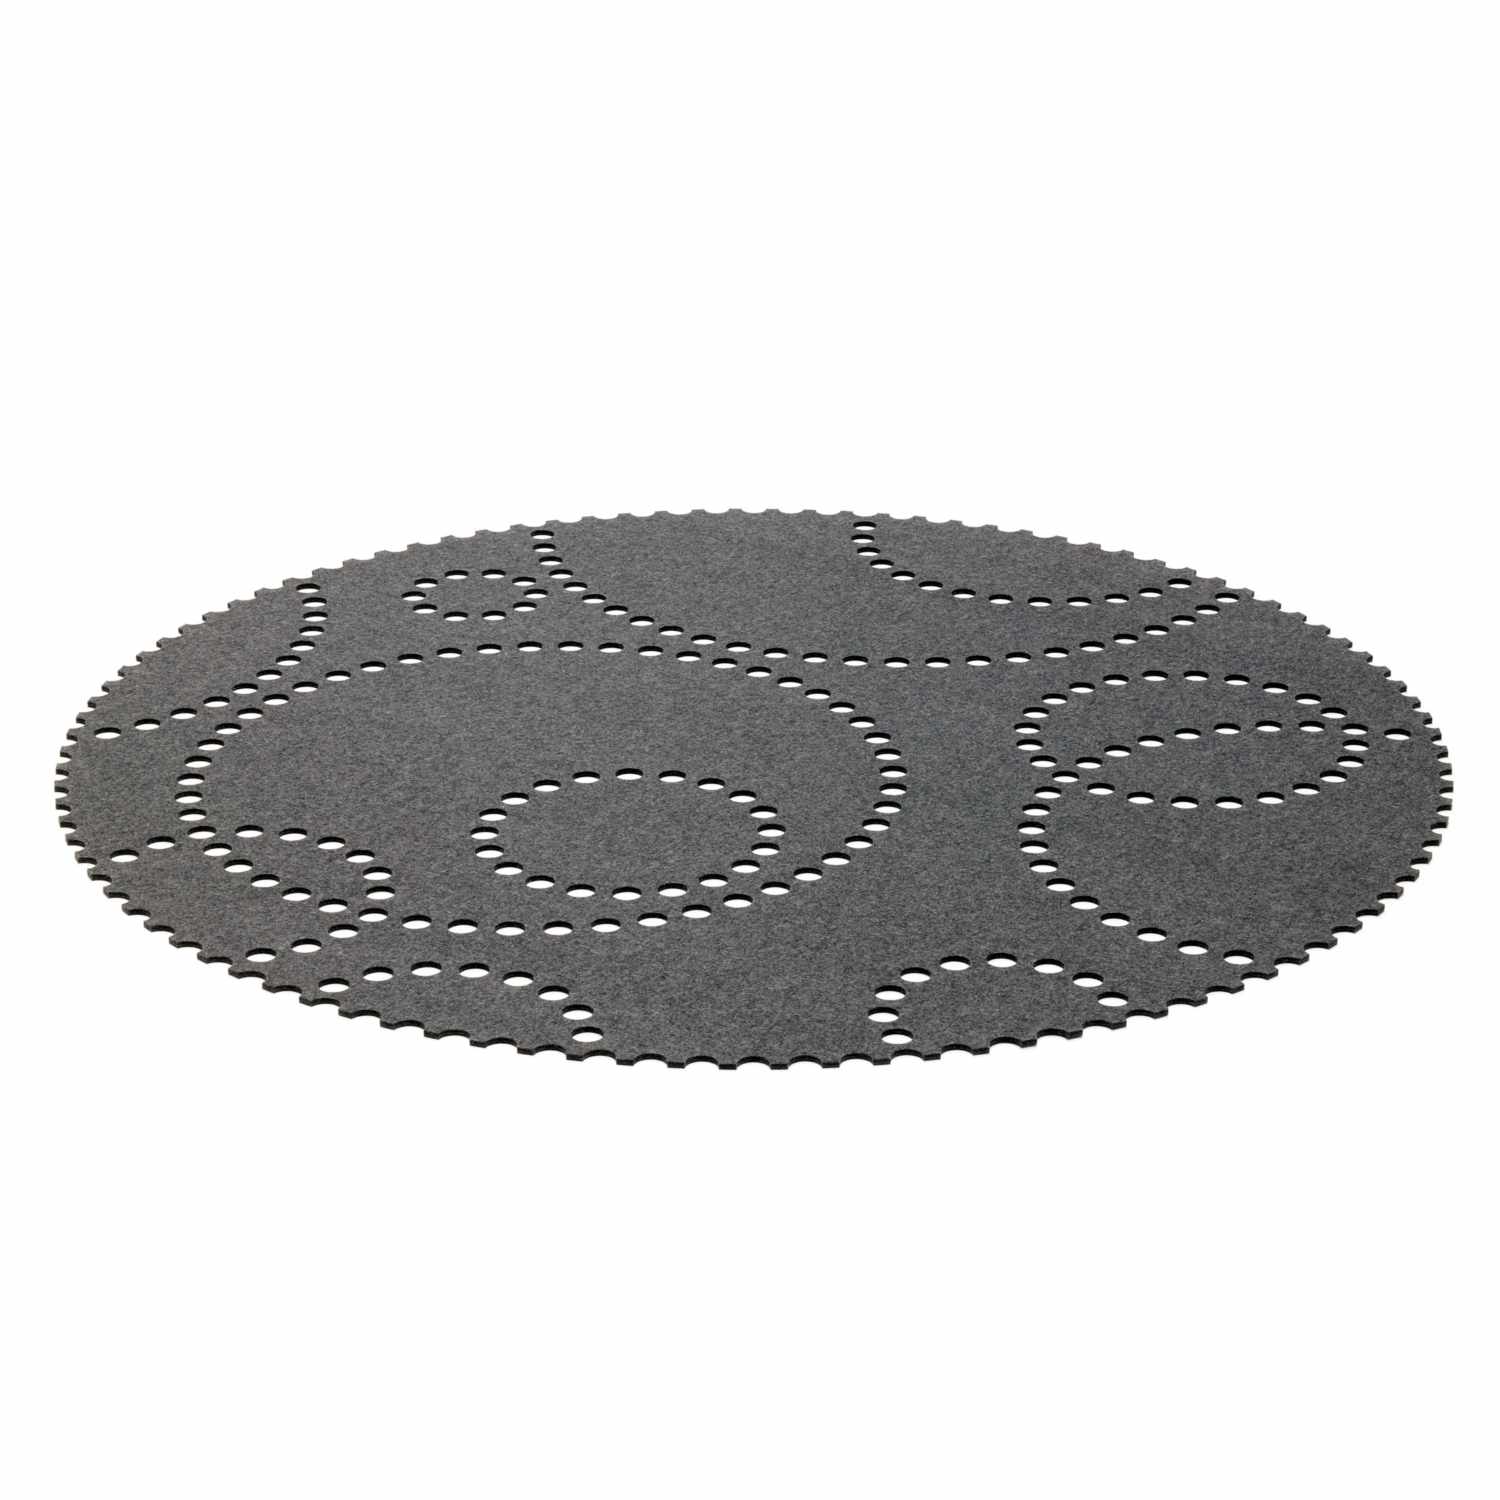 STAMP Teppich, Farbe graphit, Durchmesser 120 cm von HEY-SIGN